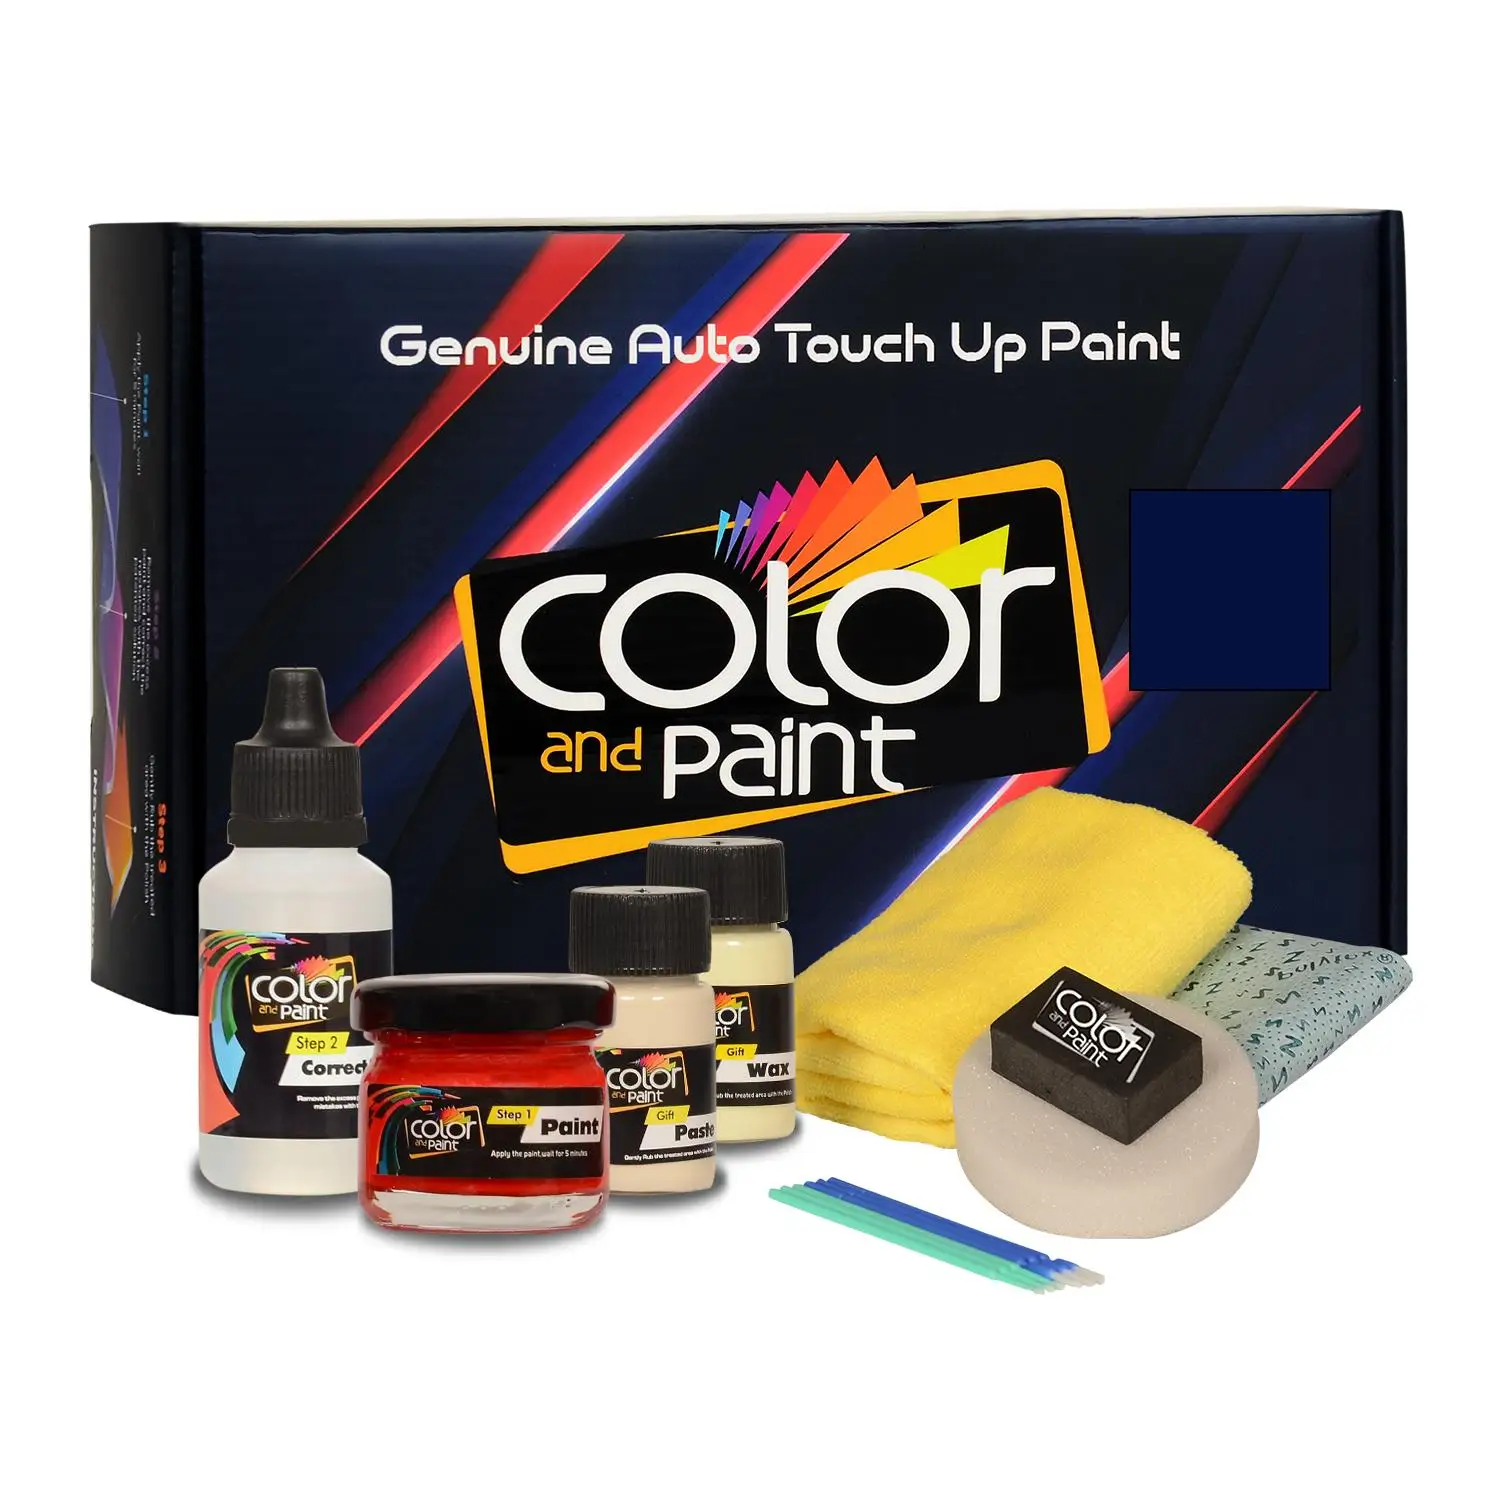 

Color and Paint compatible with Dodge Automotive Touch Up Paint - LAPIS BLUE - RC4 - Basic Care